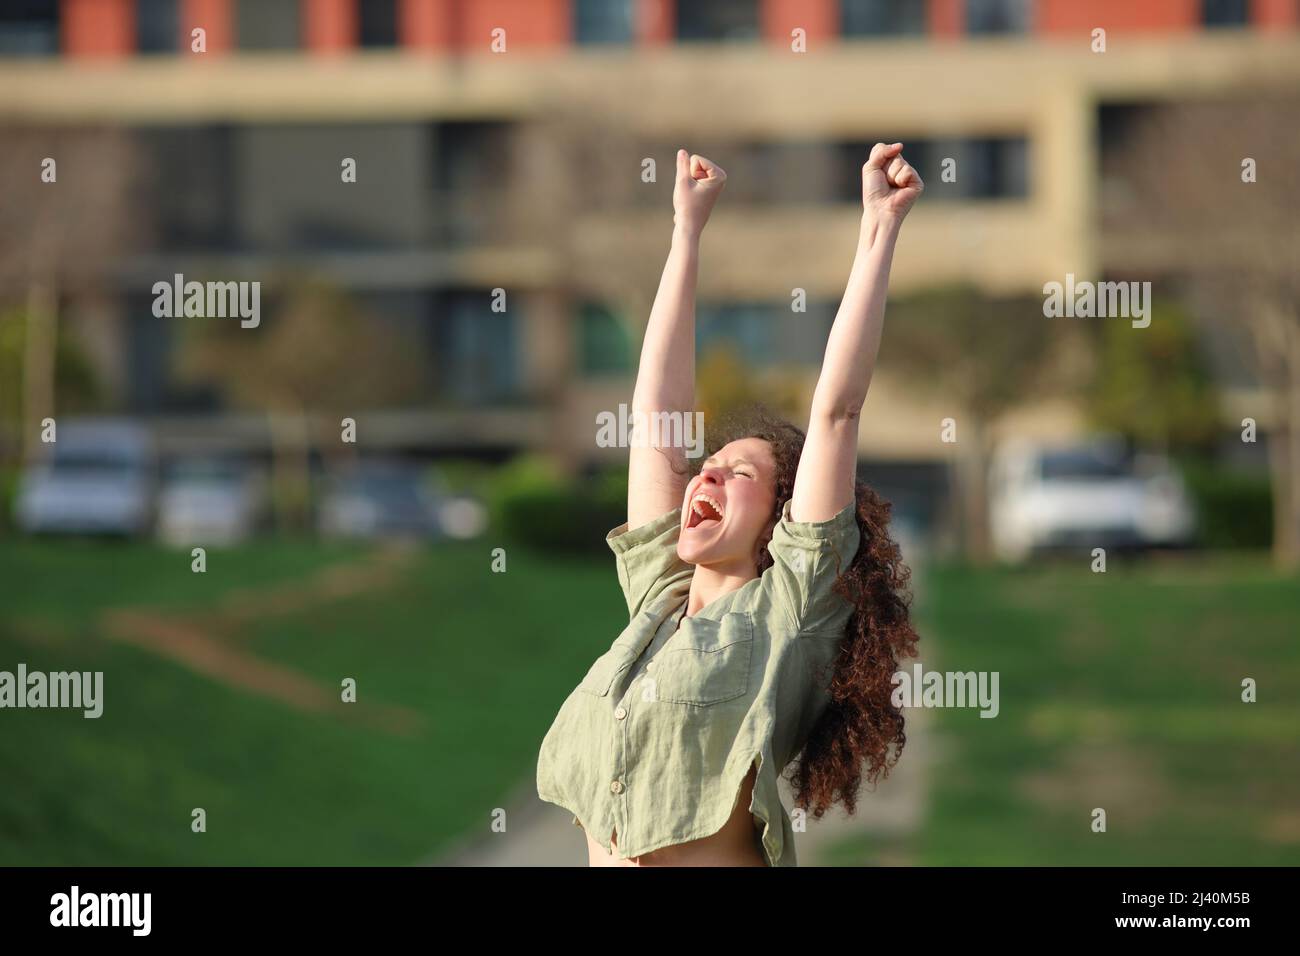 Eine aufgeregte Frau, die die Arme hebt und den Erfolg in einem Park feiert Stockfoto